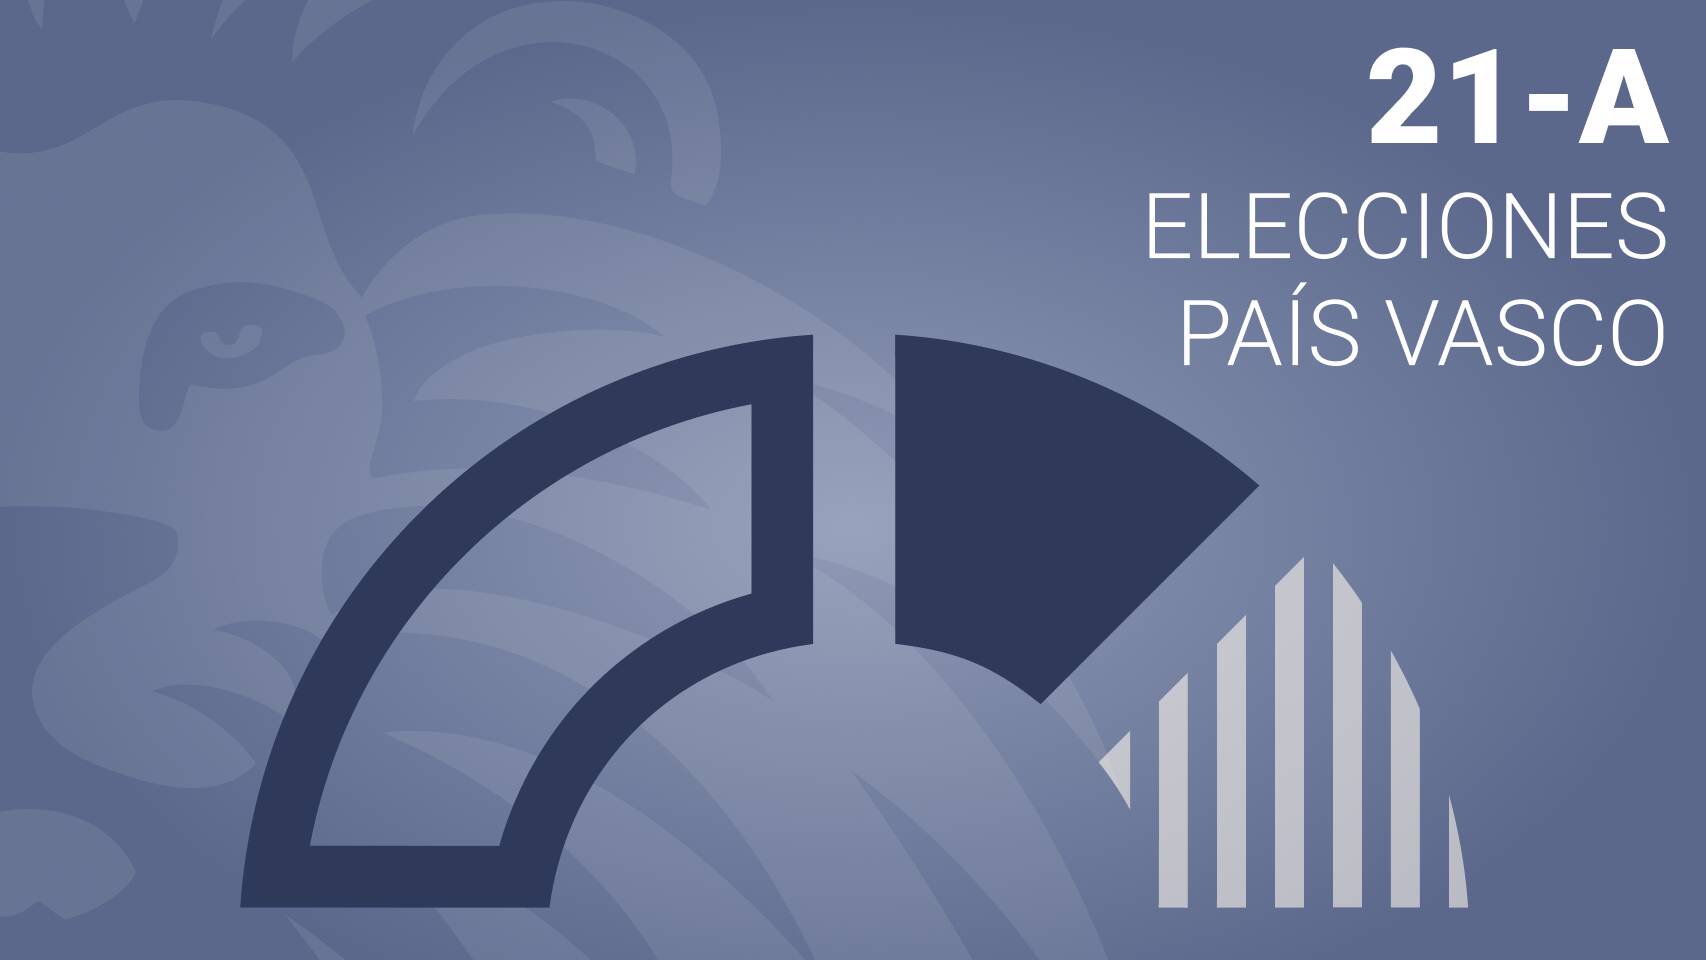 Estos son los resultados de las elecciones vascas en Gatika - PNV gana con el 49.65% de los votos